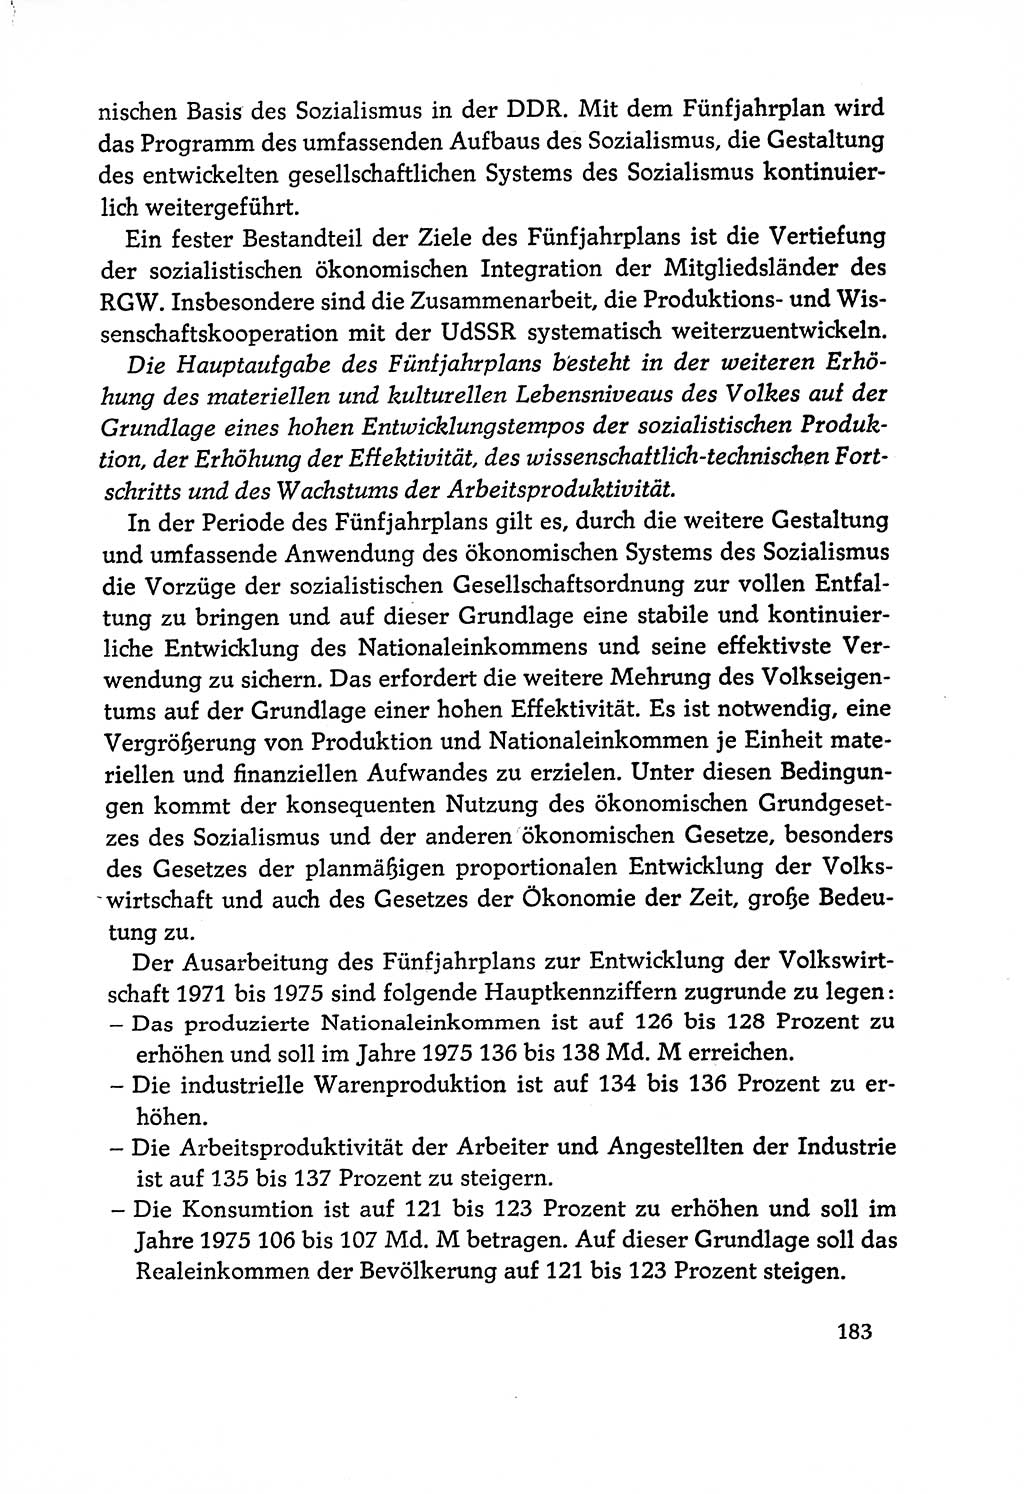 Dokumente der Sozialistischen Einheitspartei Deutschlands (SED) [Deutsche Demokratische Republik (DDR)] 1970-1971, Seite 183 (Dok. SED DDR 1970-1971, S. 183)